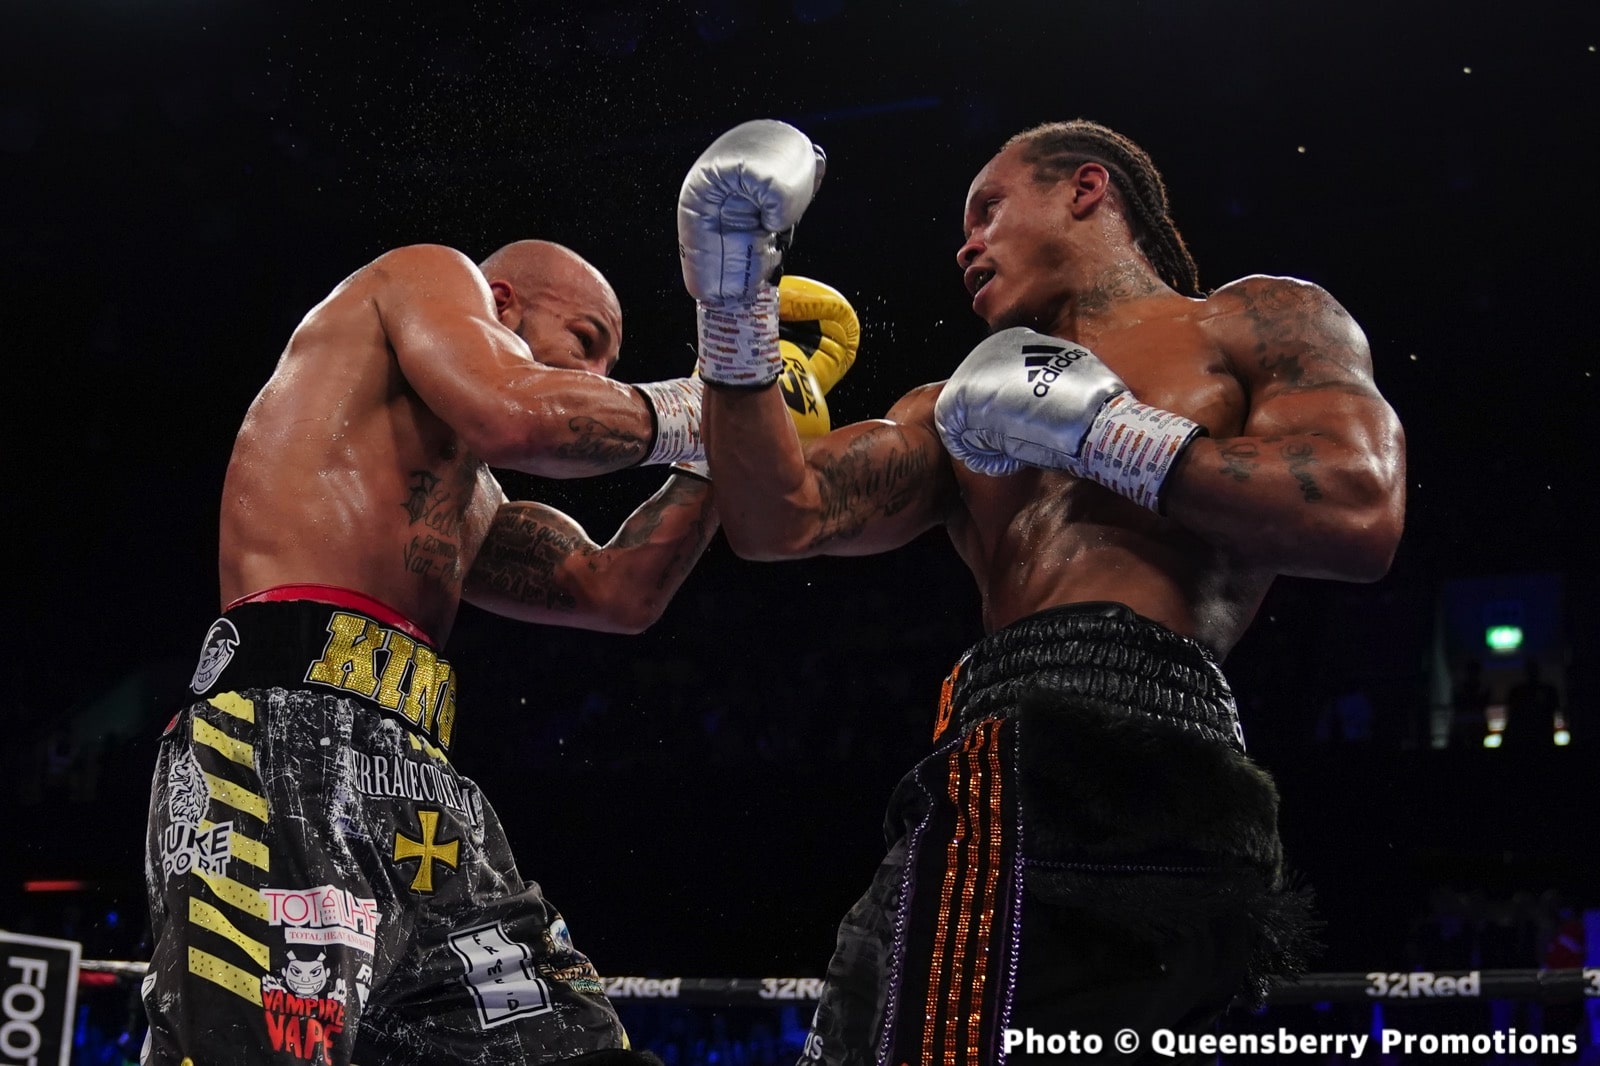 Anthony Yarde boxing image / photo